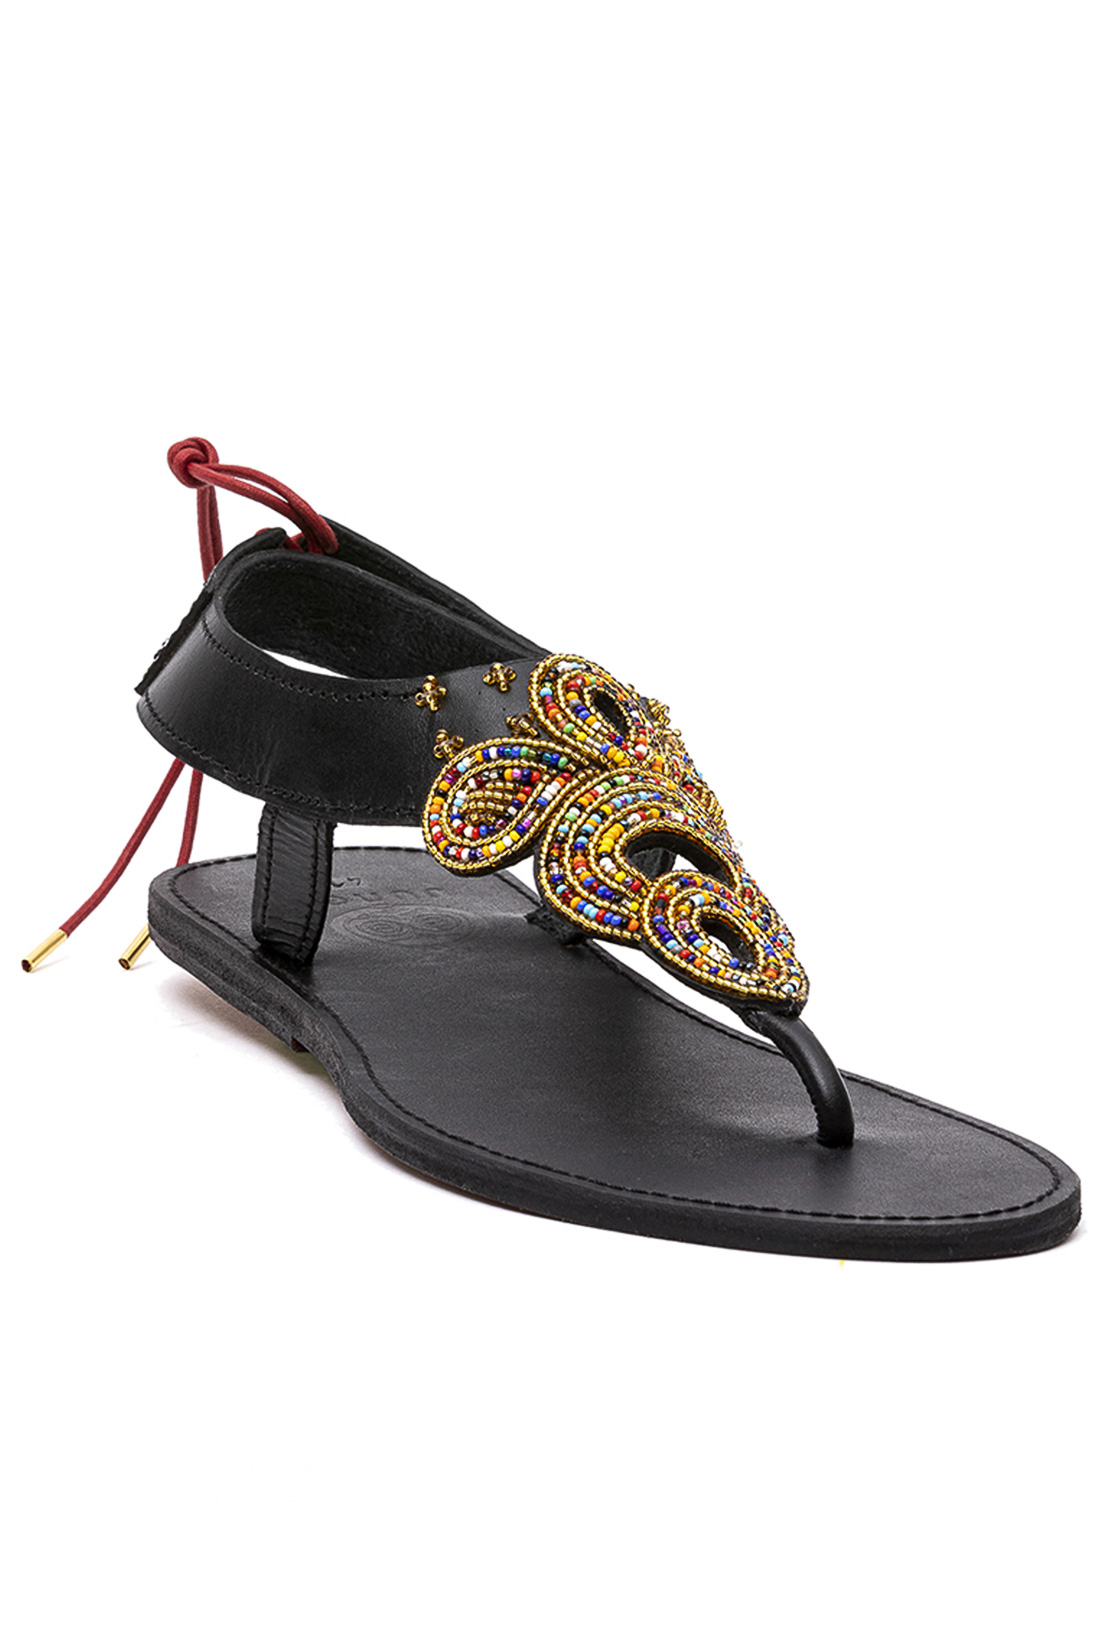 sandales barefoot mixtes Black Widow I cuir vegetal et perles de verre I Uungu I Image 2 I Label AÉ Paris